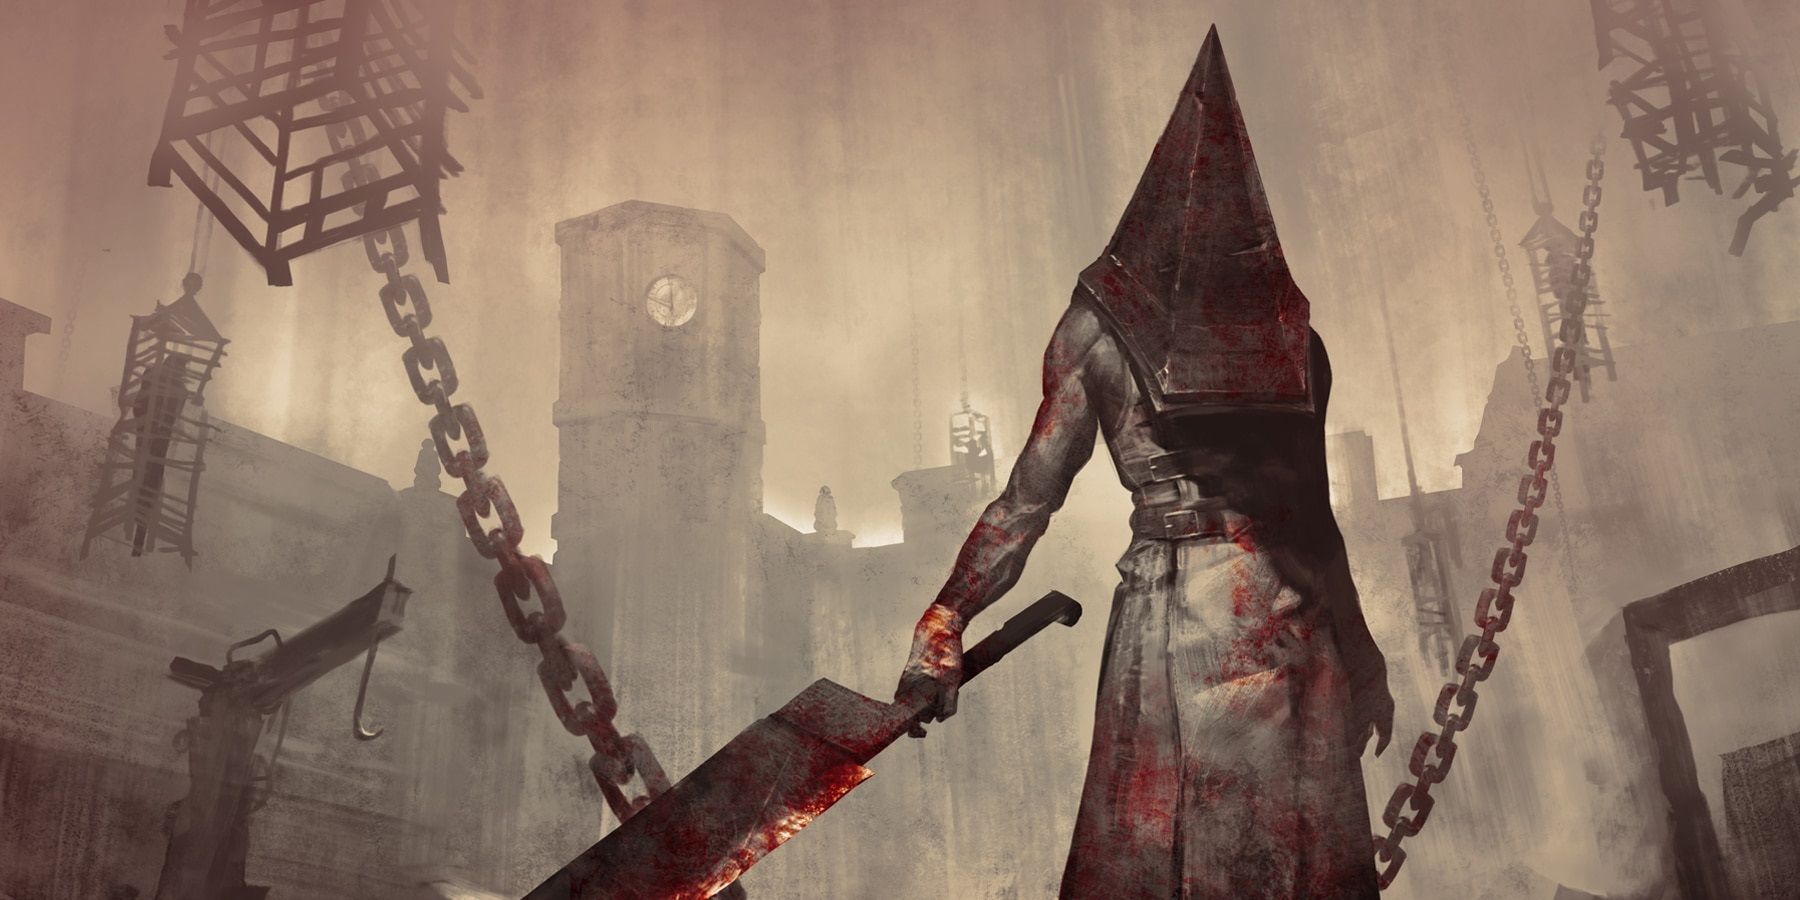 Plotka: Konami pracuje nad nowymi grami Silent Hill